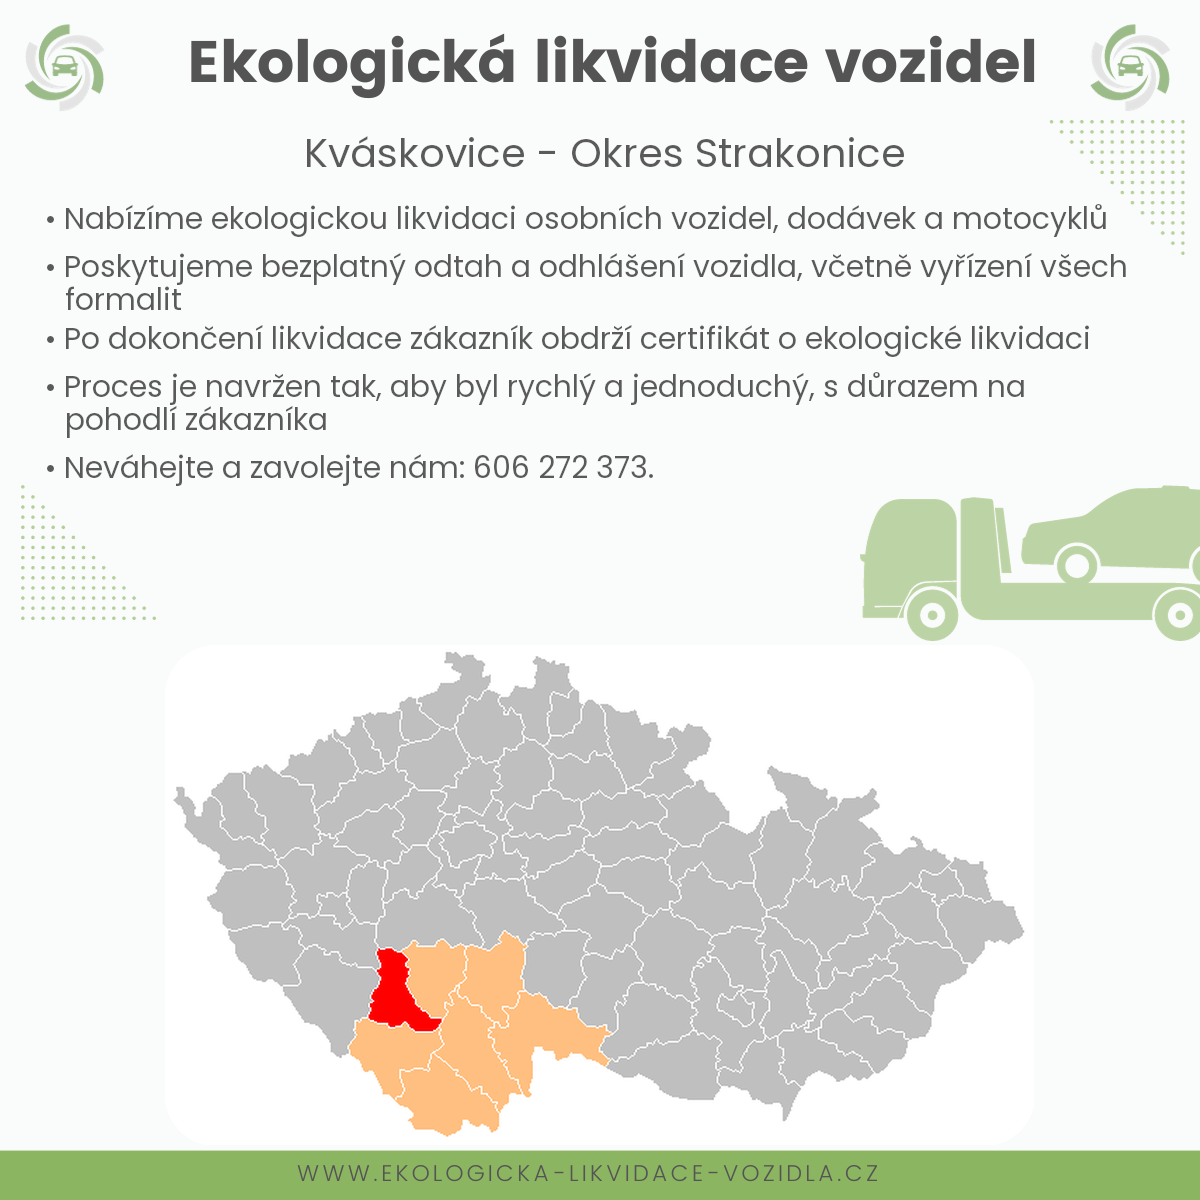 likvidace vozidel - Kváskovice